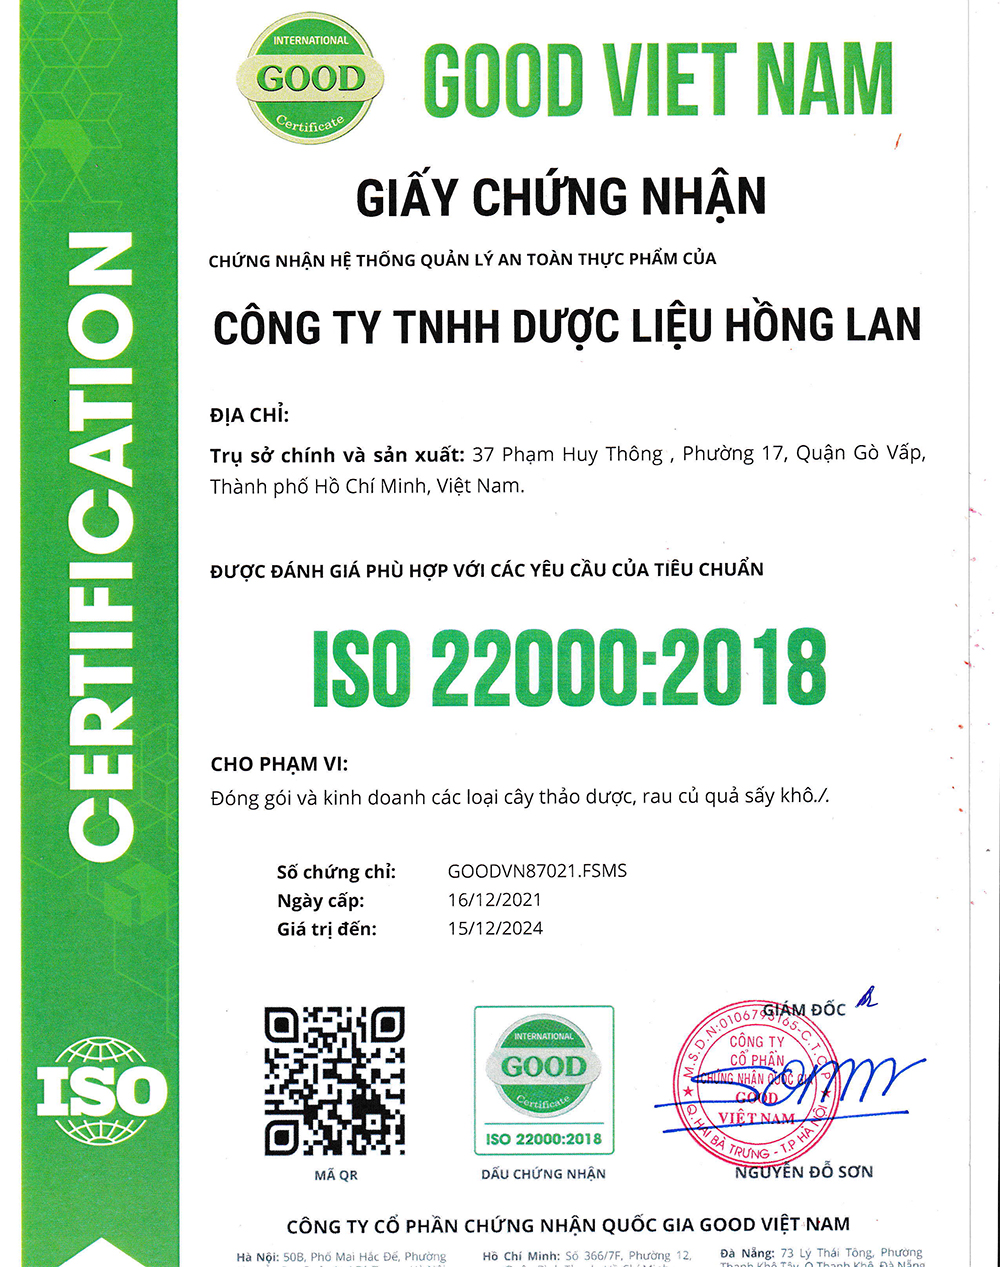 Trà túi lọc Chữa trị Dị Ứng được sản xuất bởi Công ty TNHH Dược Liệu Hồng Lan theo hệ thống quản lý an toàn thực phẩm ISO 22000:2018 được cấp bởi công ty cổ phần chứng nhận Quốc Gia Good Việt Nam (Good Viet Nam Certification Joint Stock Company)